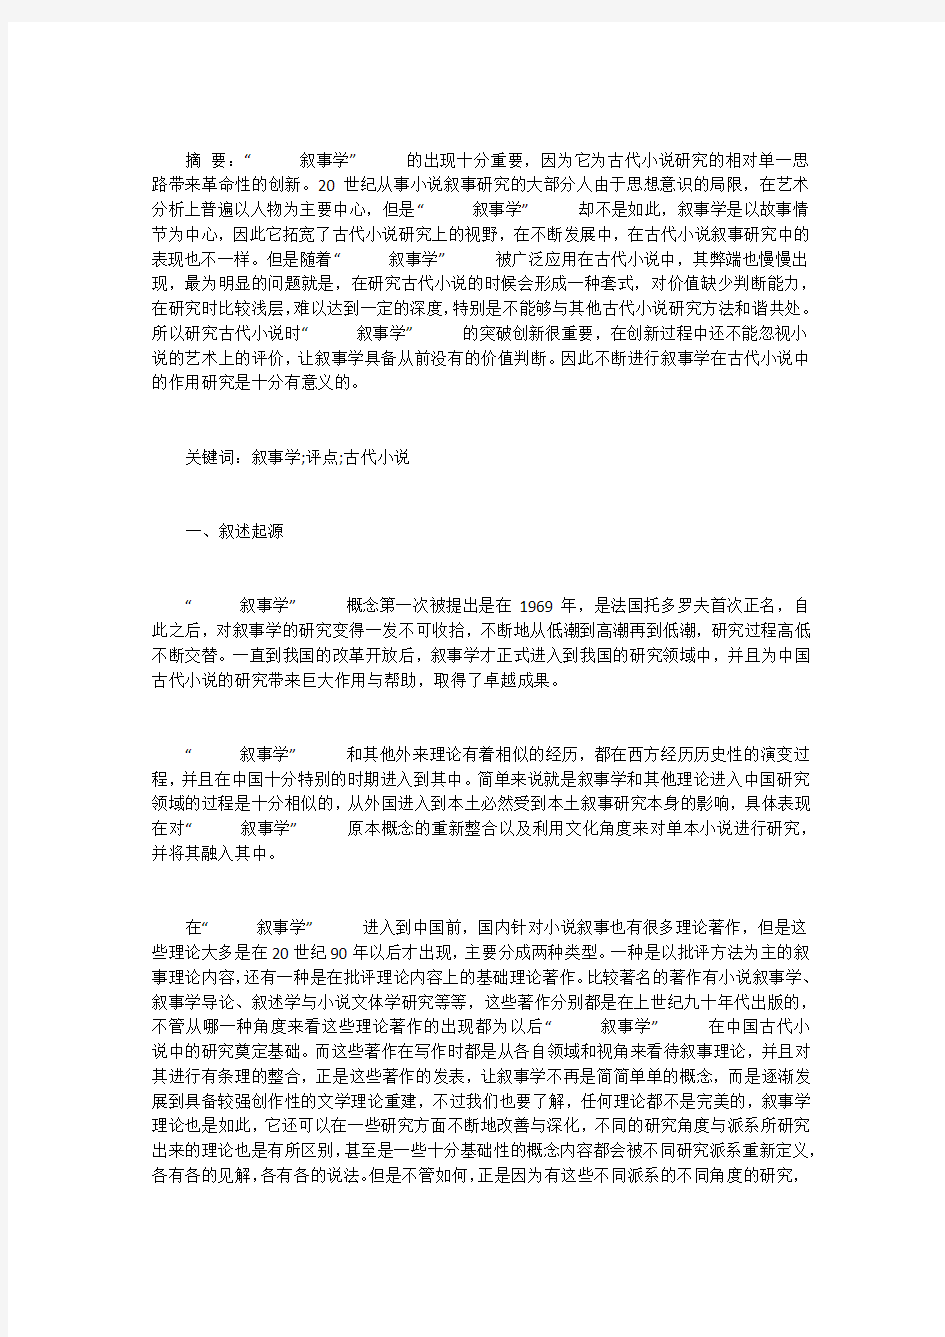 中国古代小说叙事的研究及评点第1期